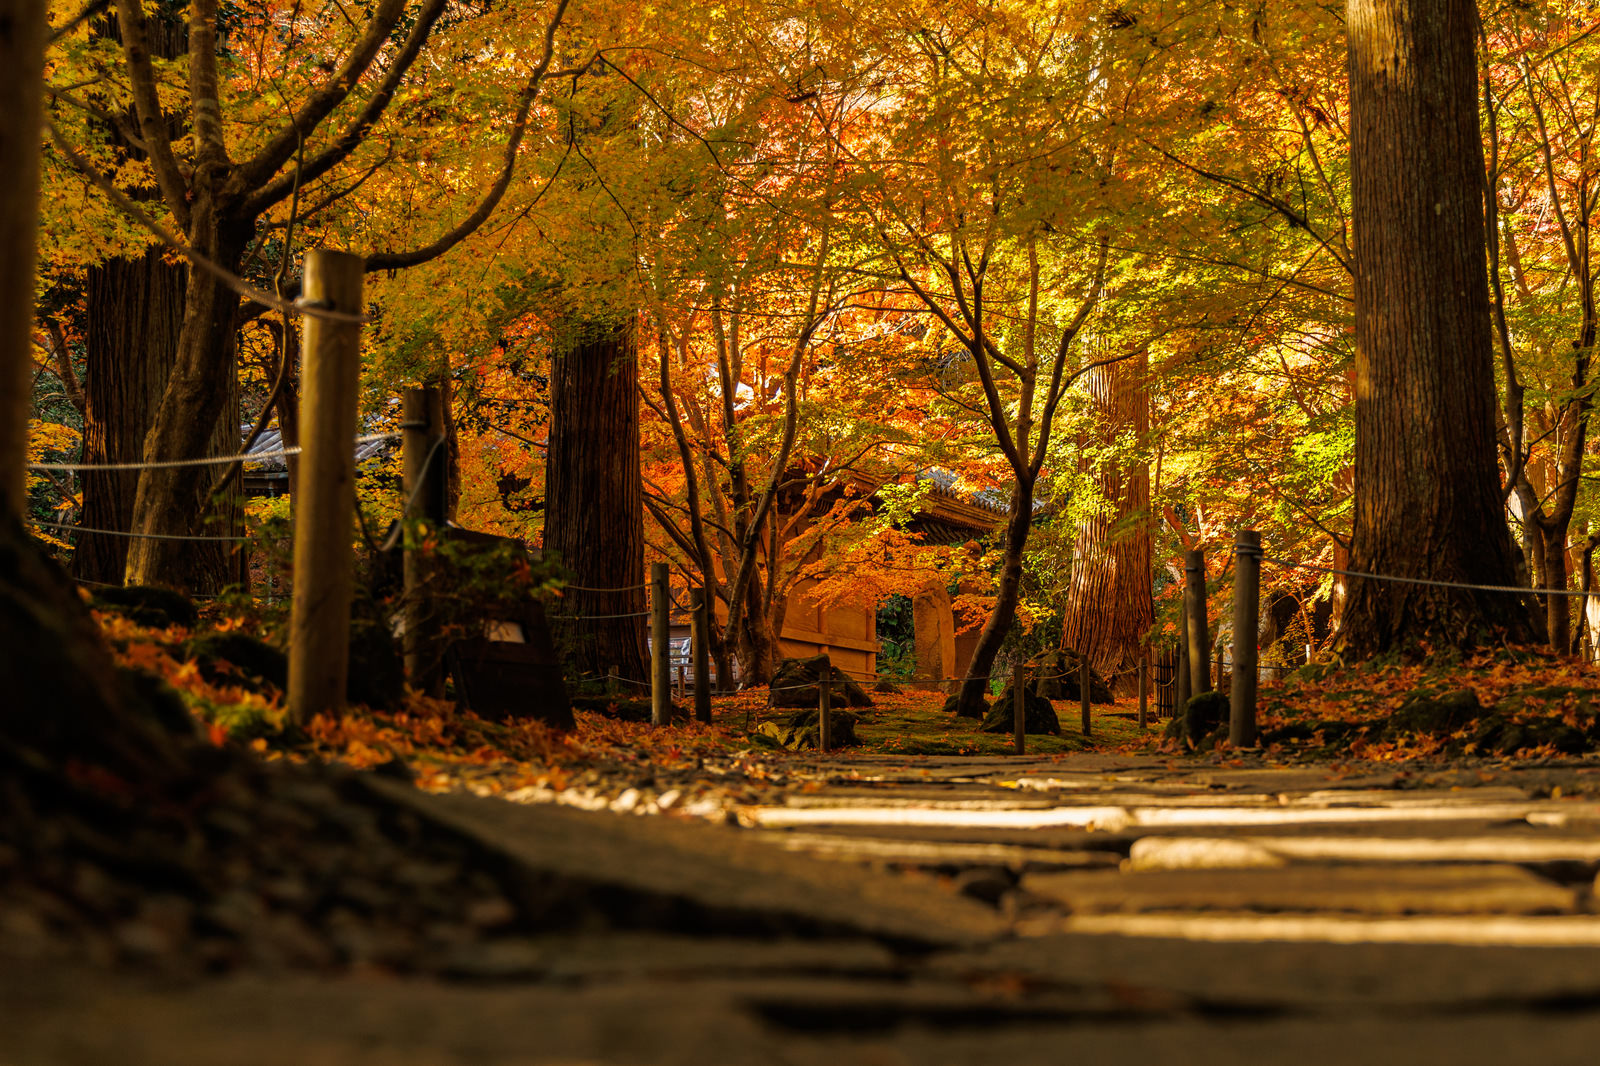 「秋の円通院 | フリー素材のぱくたそ」の写真